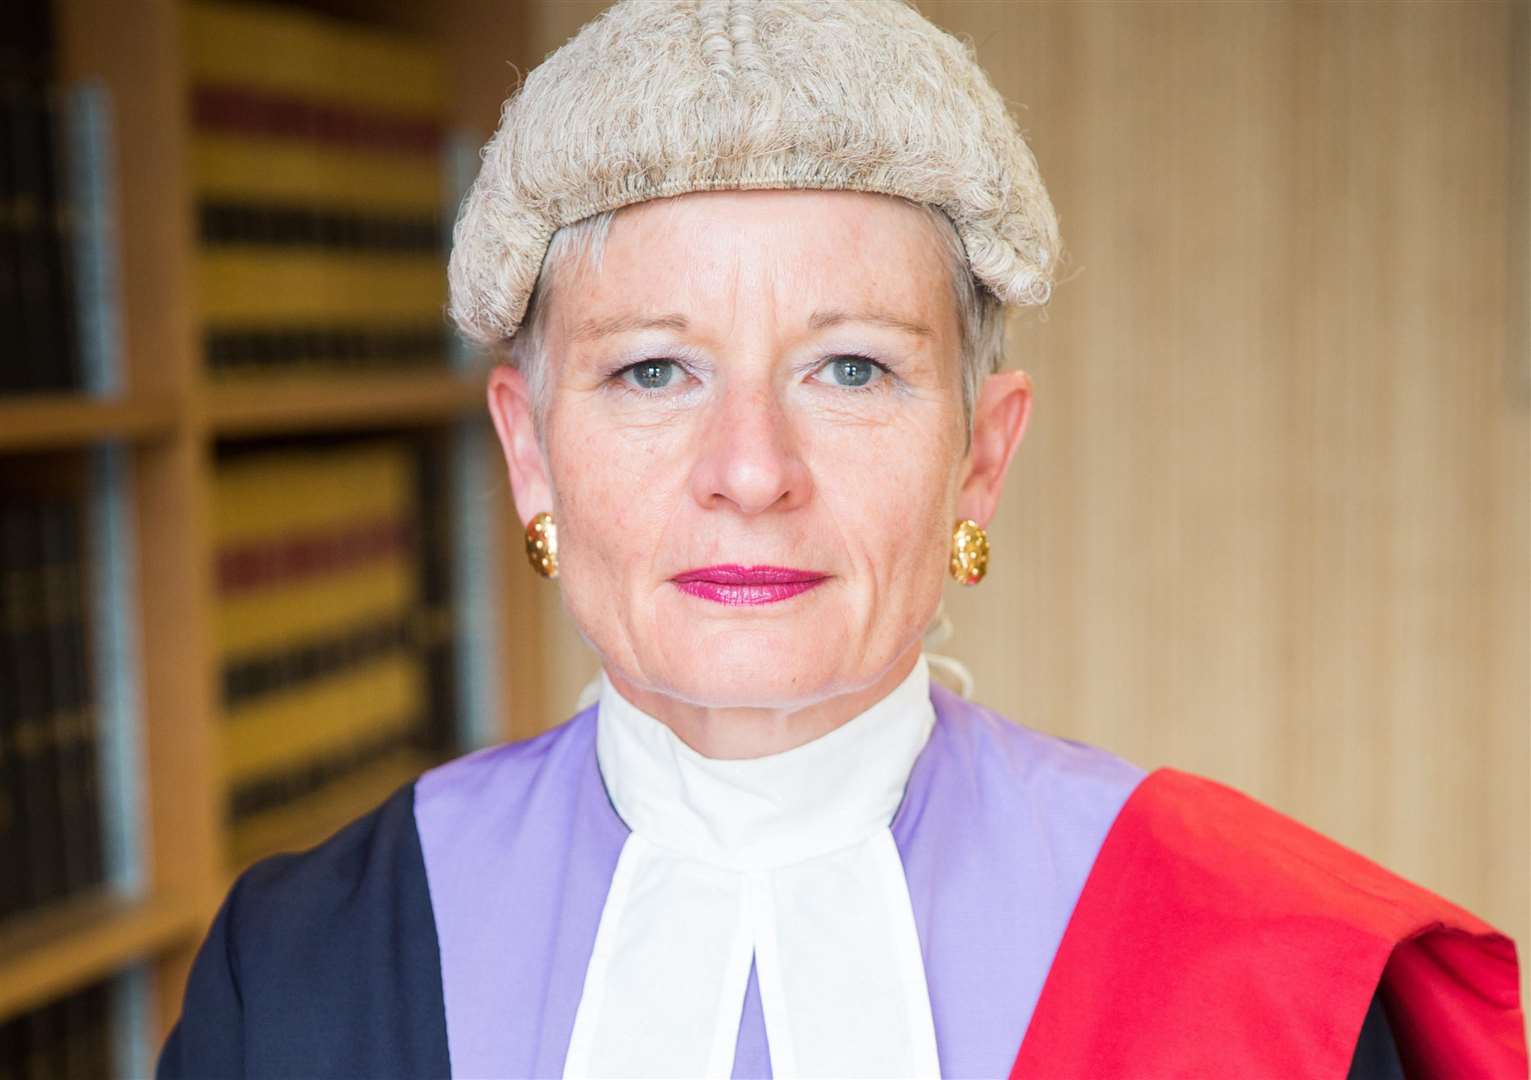 Judge Heather Baucher